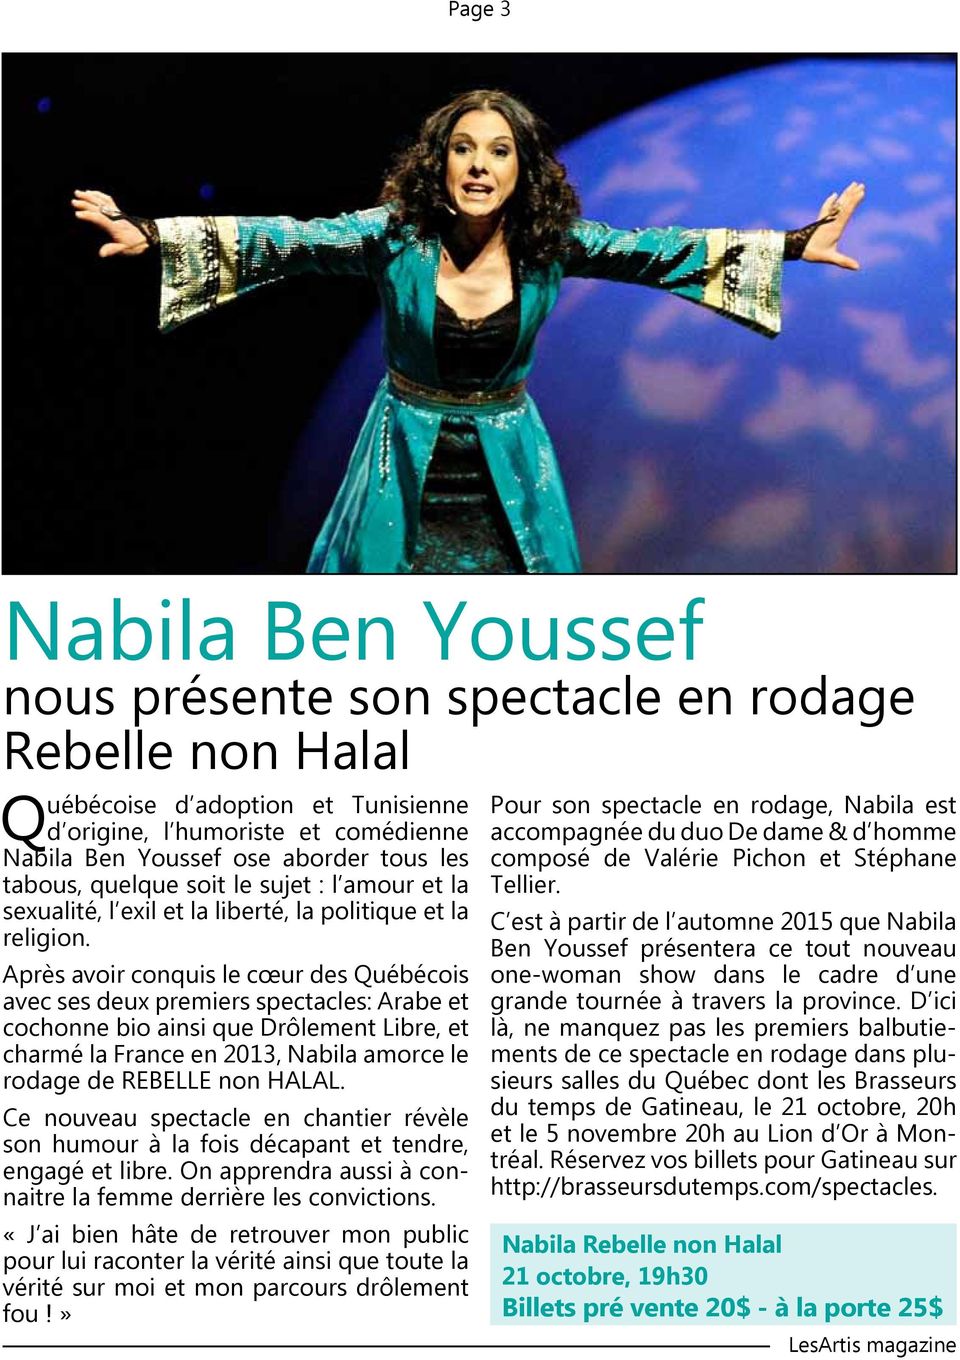 Après avoir conquis le cœur des Québécois avec ses deux premiers spectacles: Arabe et cochonne bio ainsi que Drôlement Libre, et charmé la France en 2013, Nabila amorce le rodage de REBELLE non HALAL.